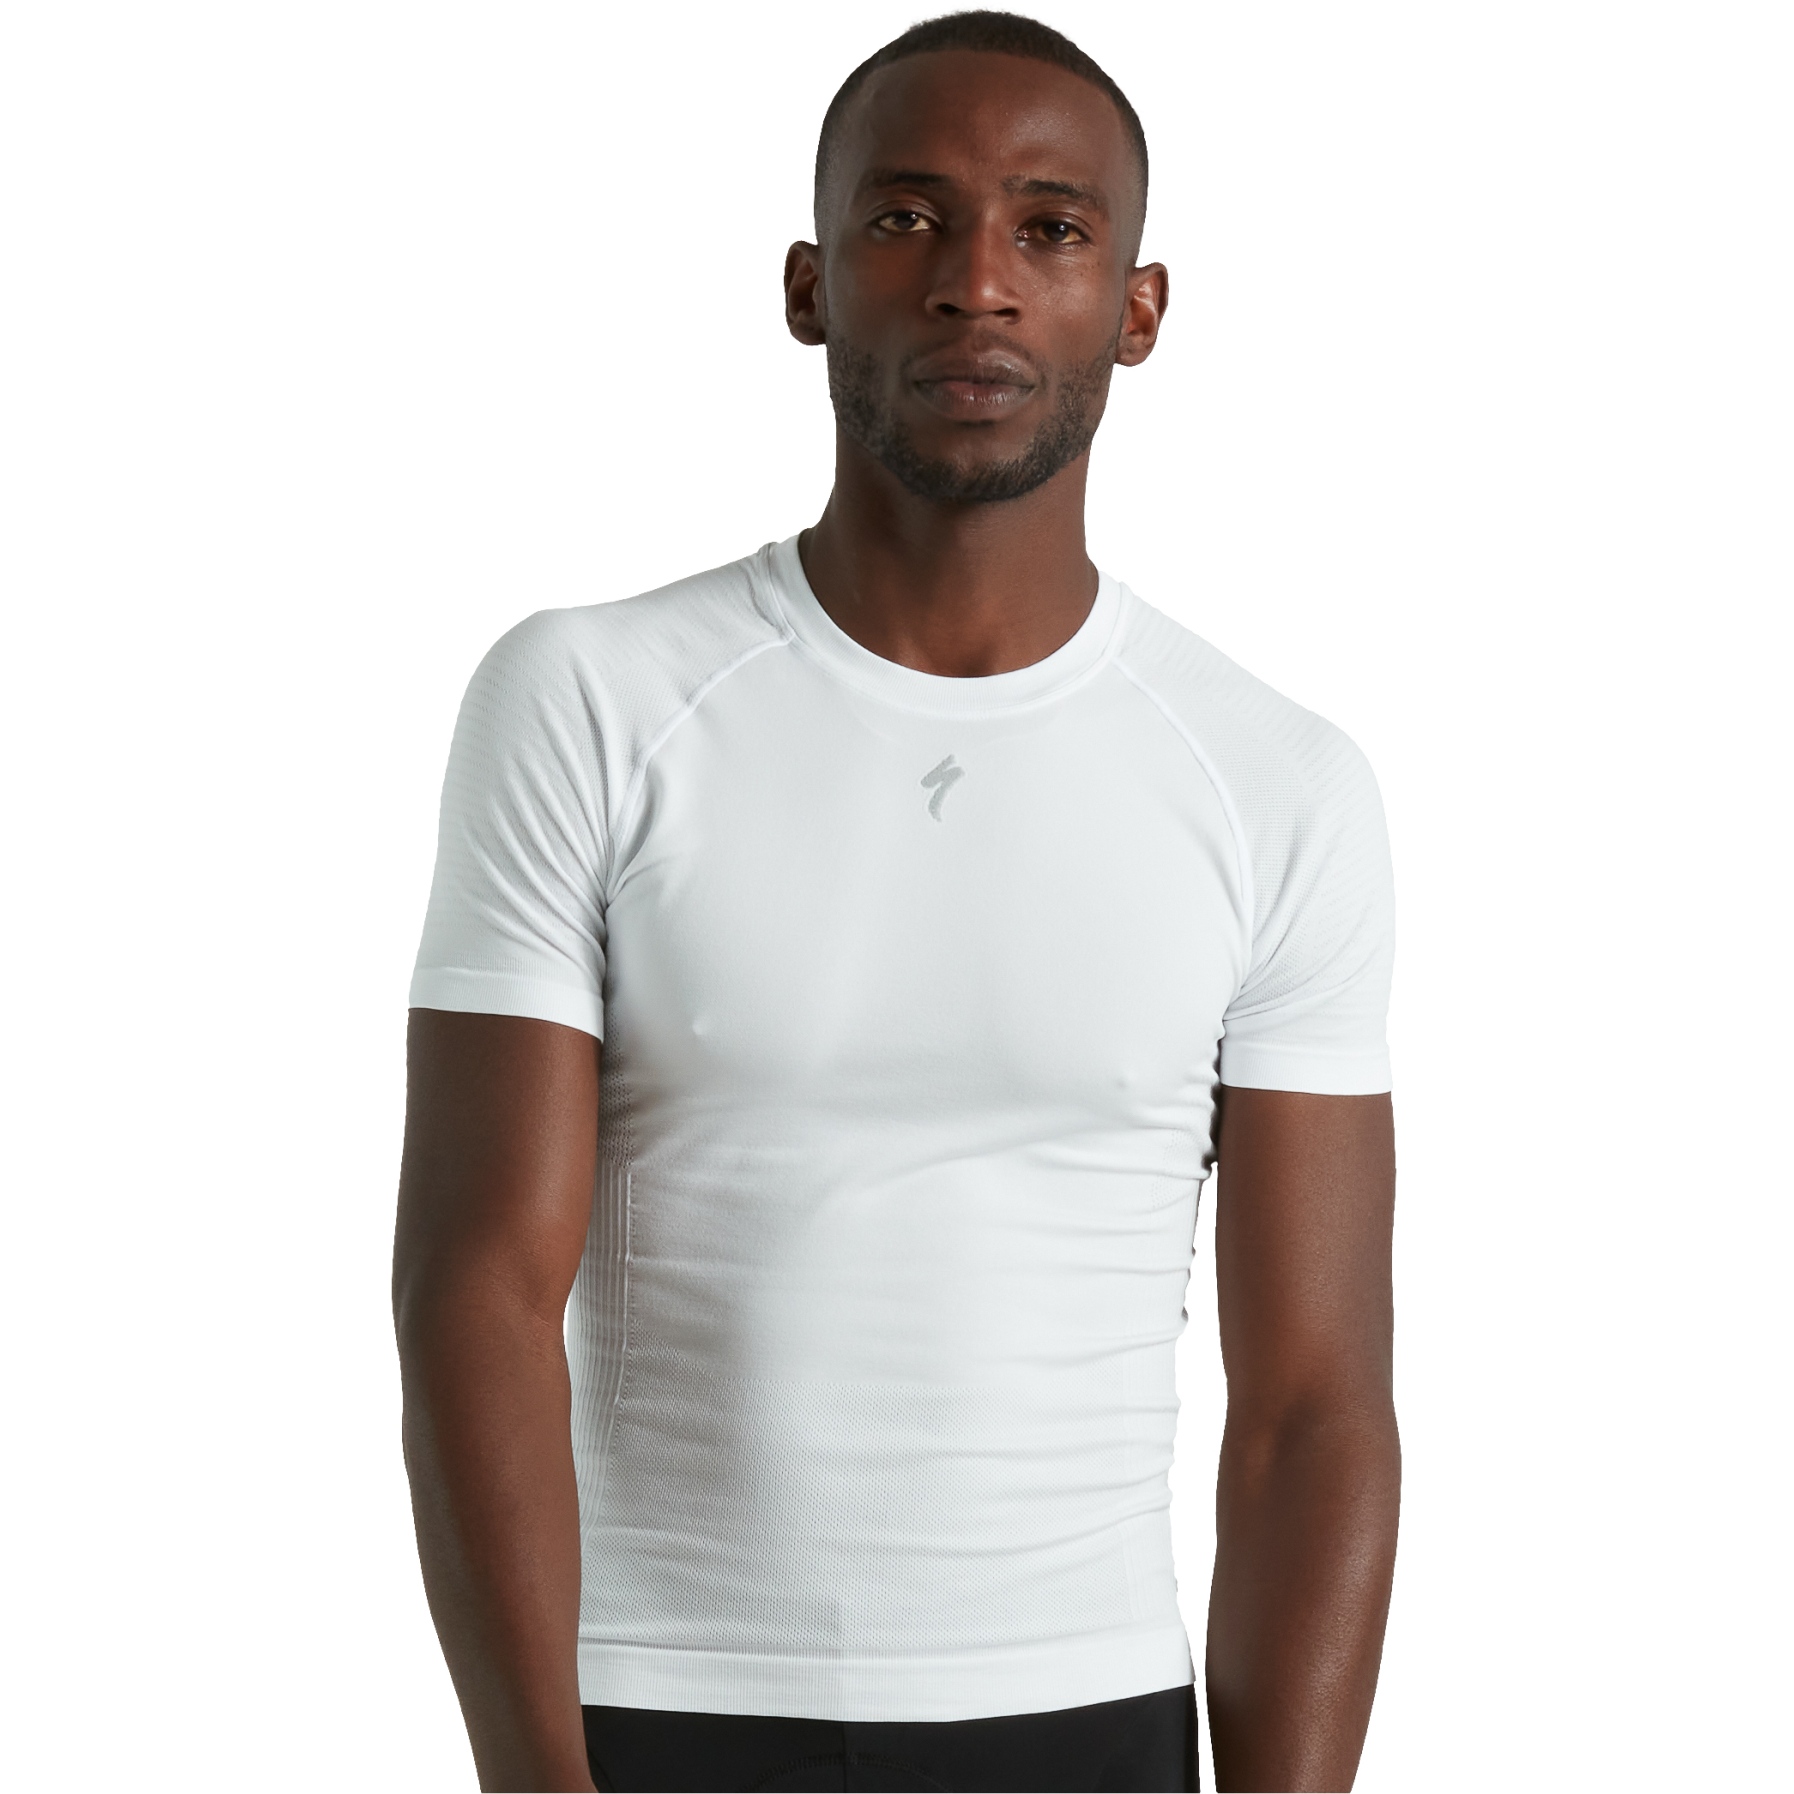 Produktbild von Specialized Seamless Light Baselayer T-Shirt Herren - weiß